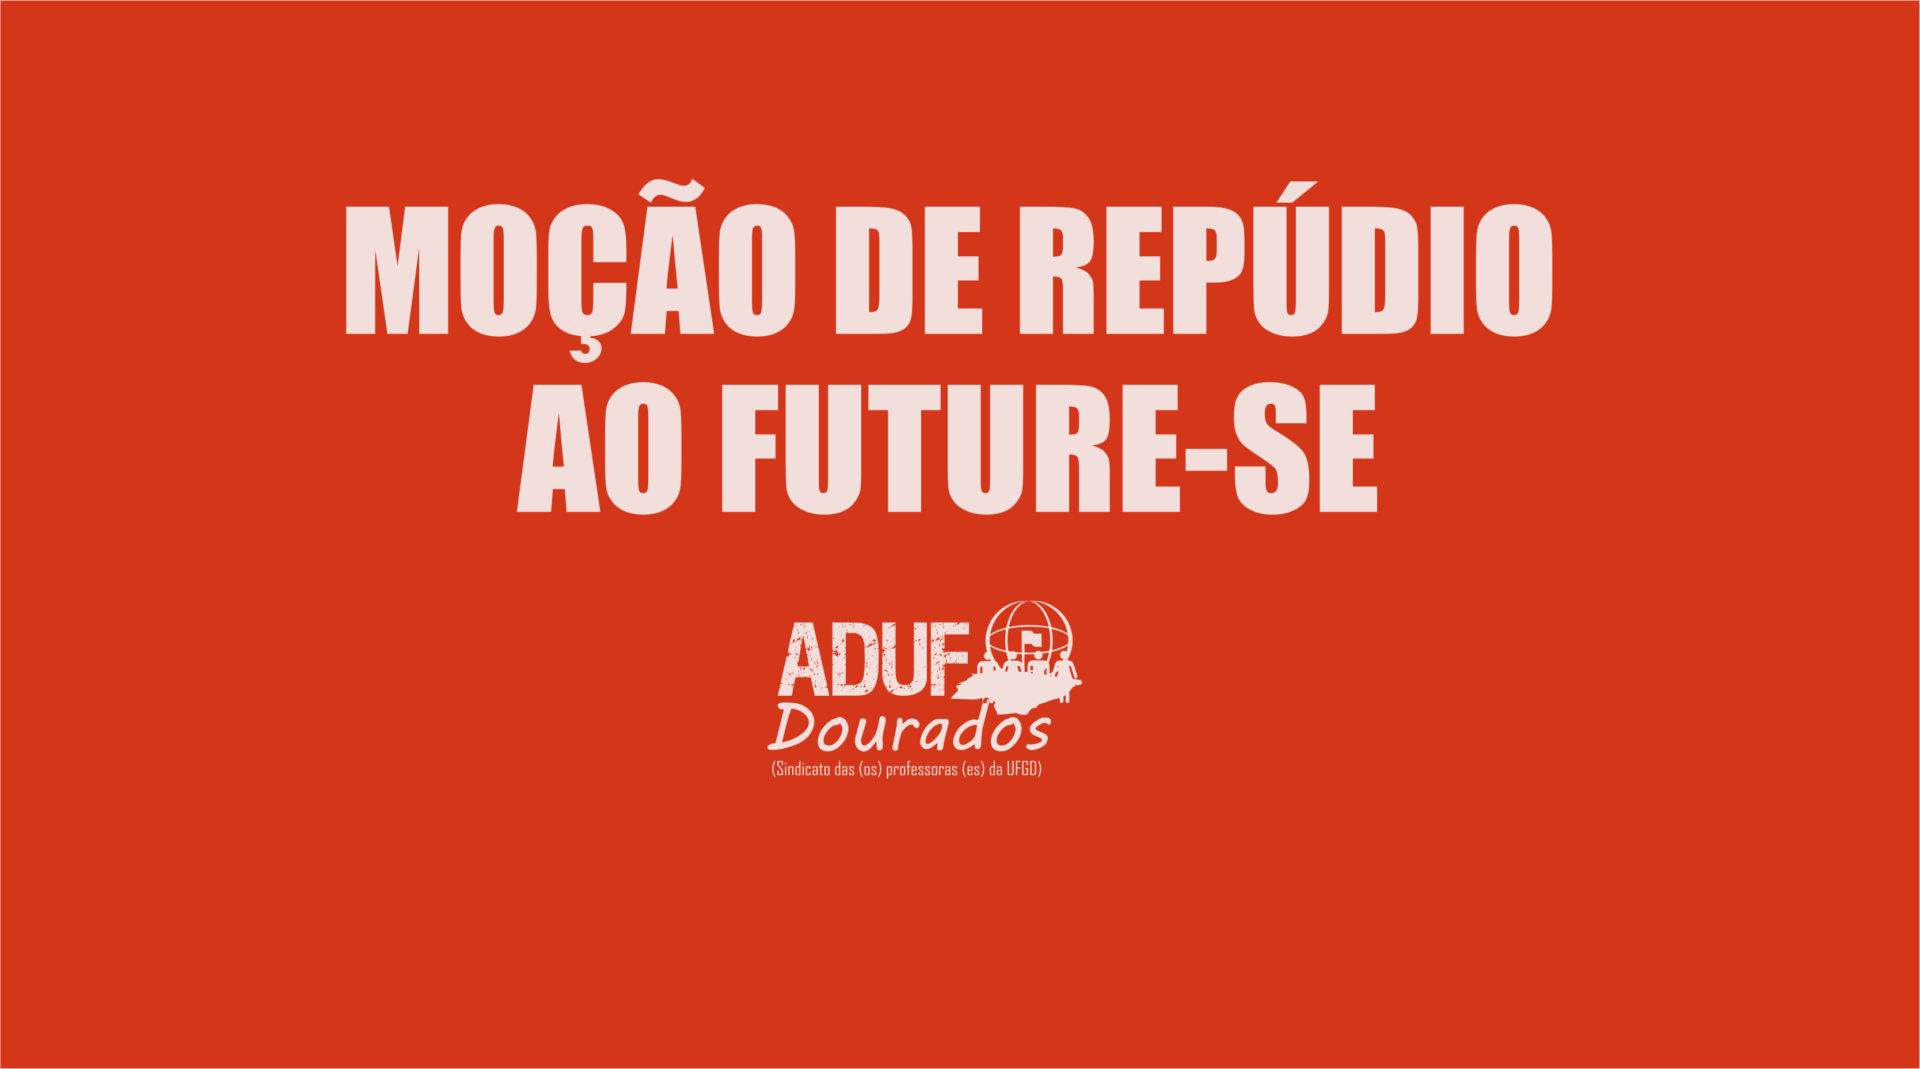 MOÇÃO DE REPÚDIO AO FUTURE-SE